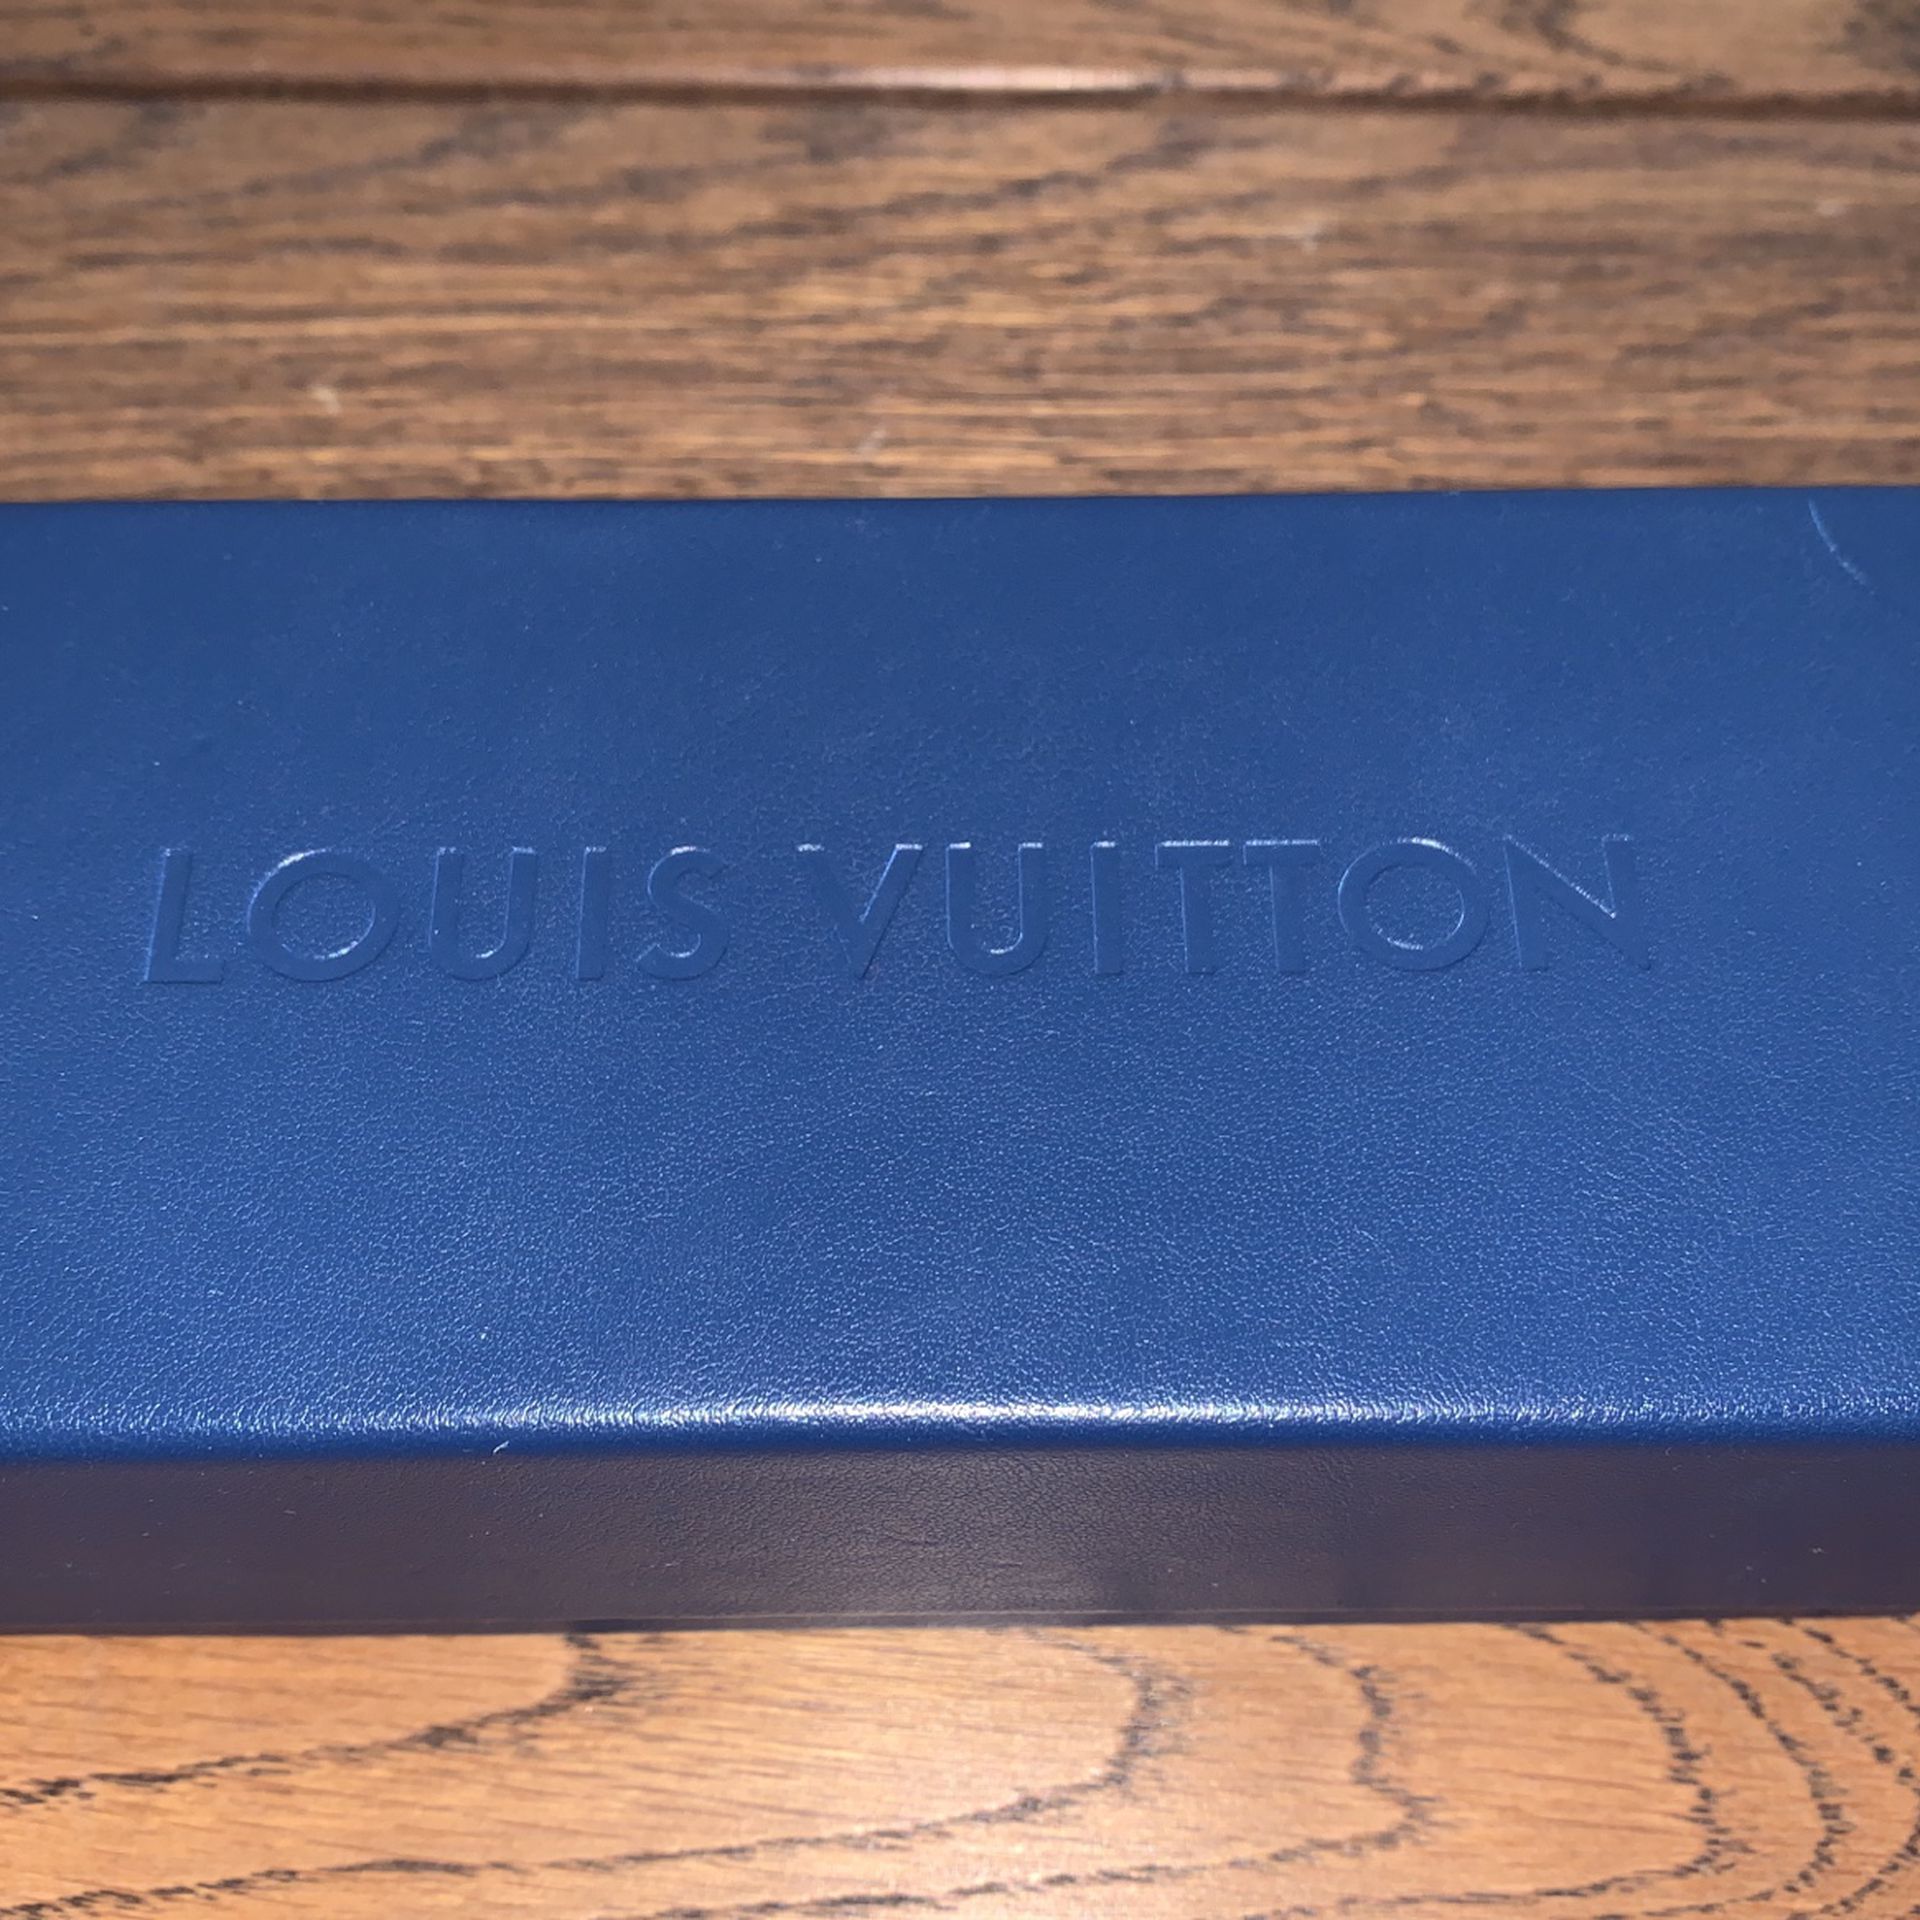 Louis Vuitton La Grande Bellezza Black Sunglasses ○ Labellov ○ Buy and Sell  Authentic Luxury